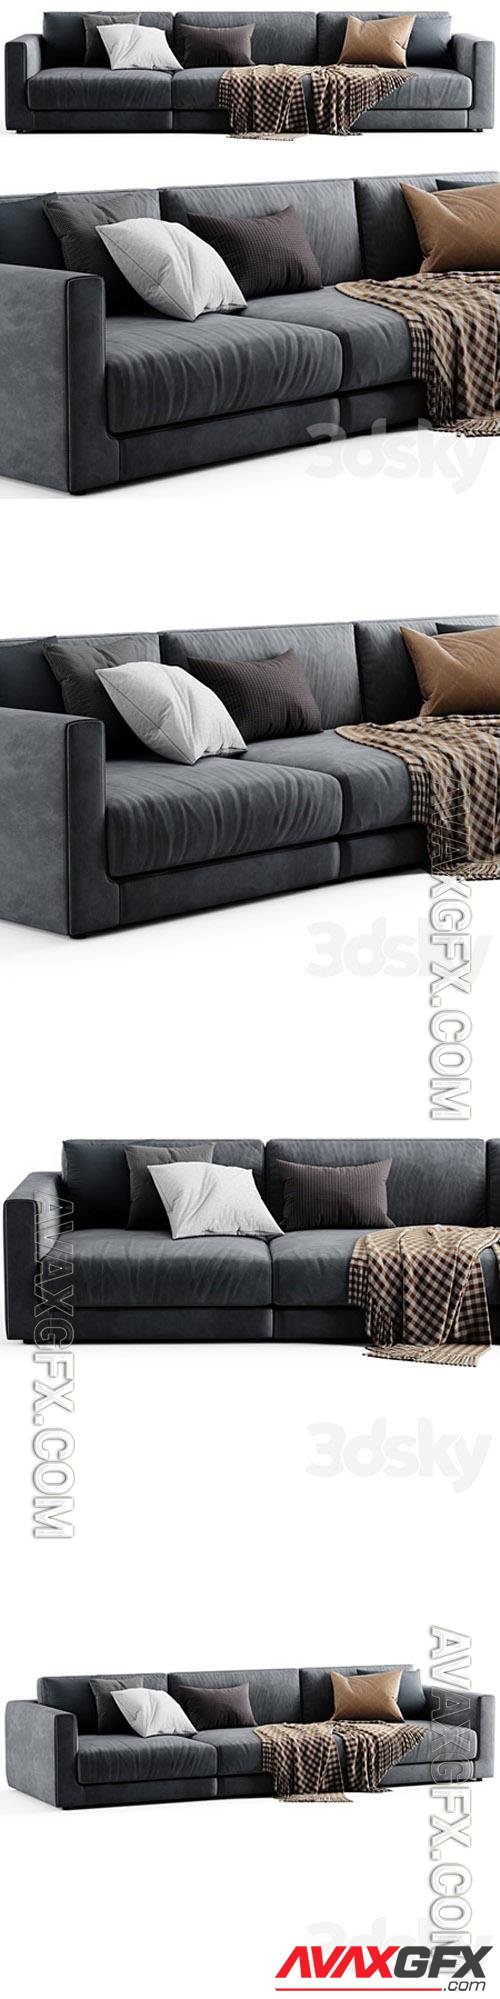 Poliform bristol sofa 3D Models